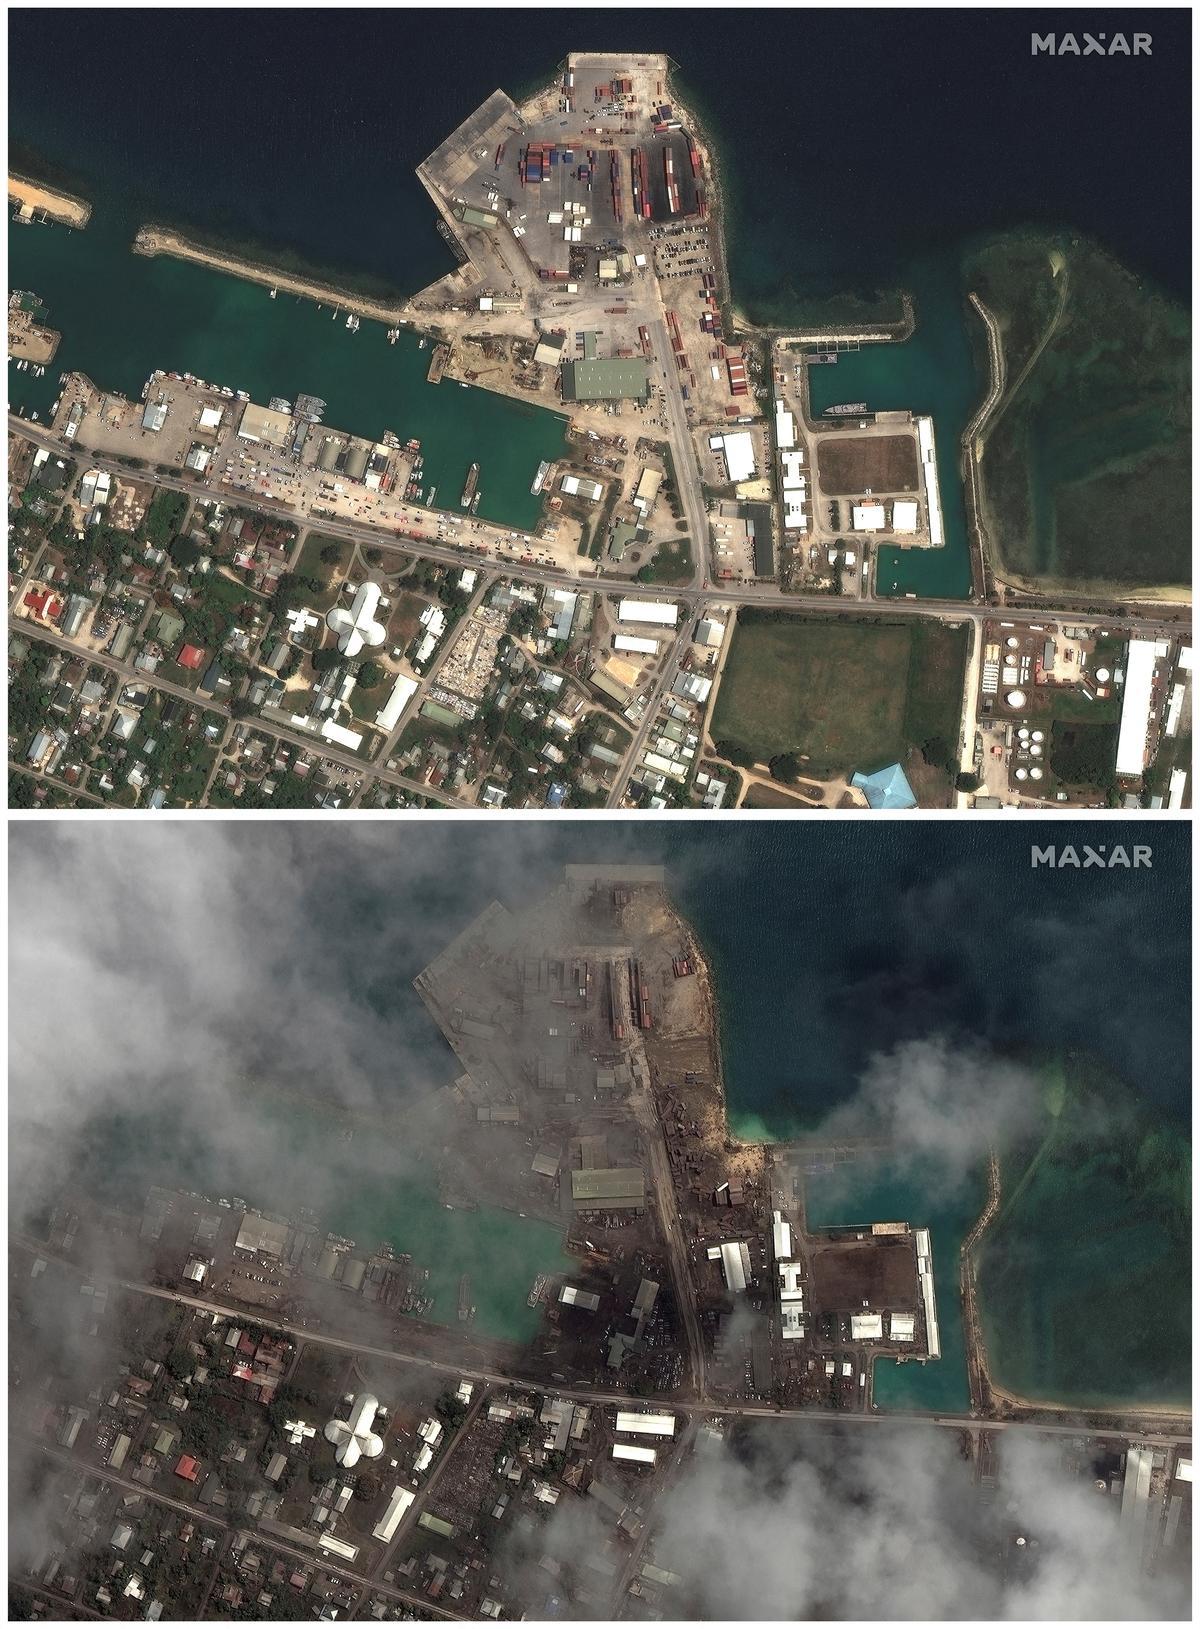 Imagen por satélite del puerto de Nuku’alofa, en Tonga, antes y después de la erupción del volcán.